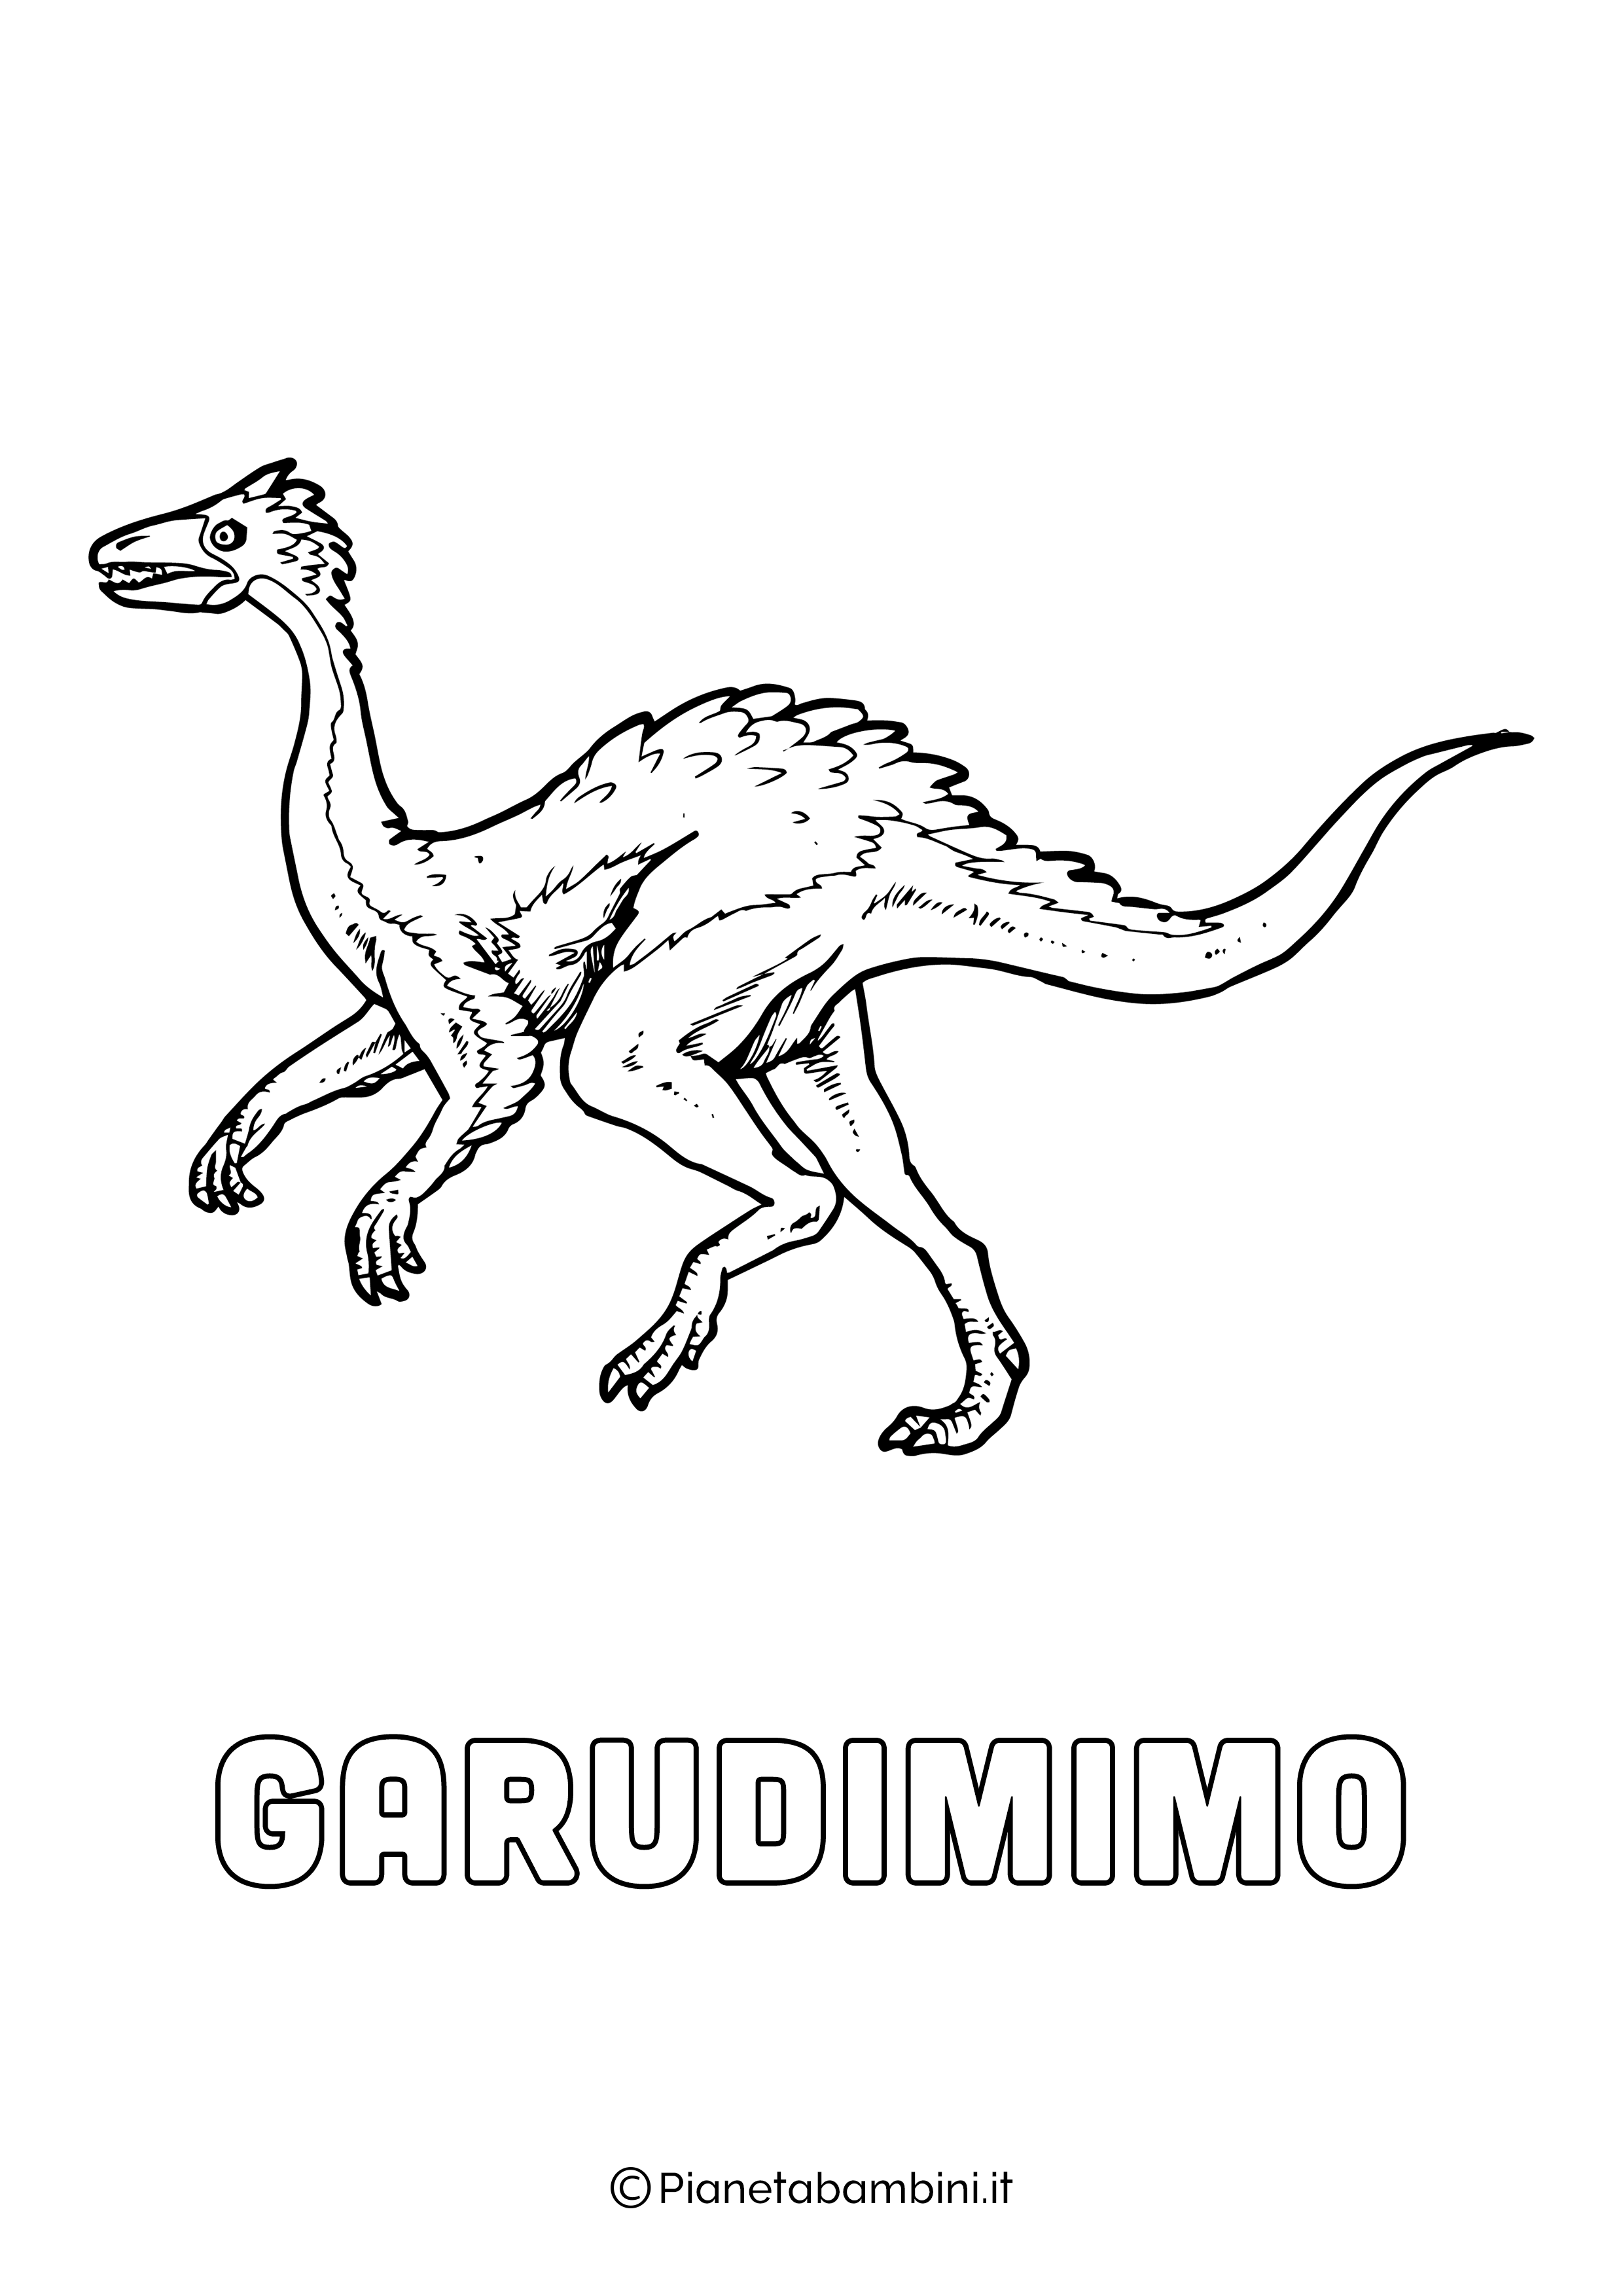 Dinosauro Fukuisauro da colorare